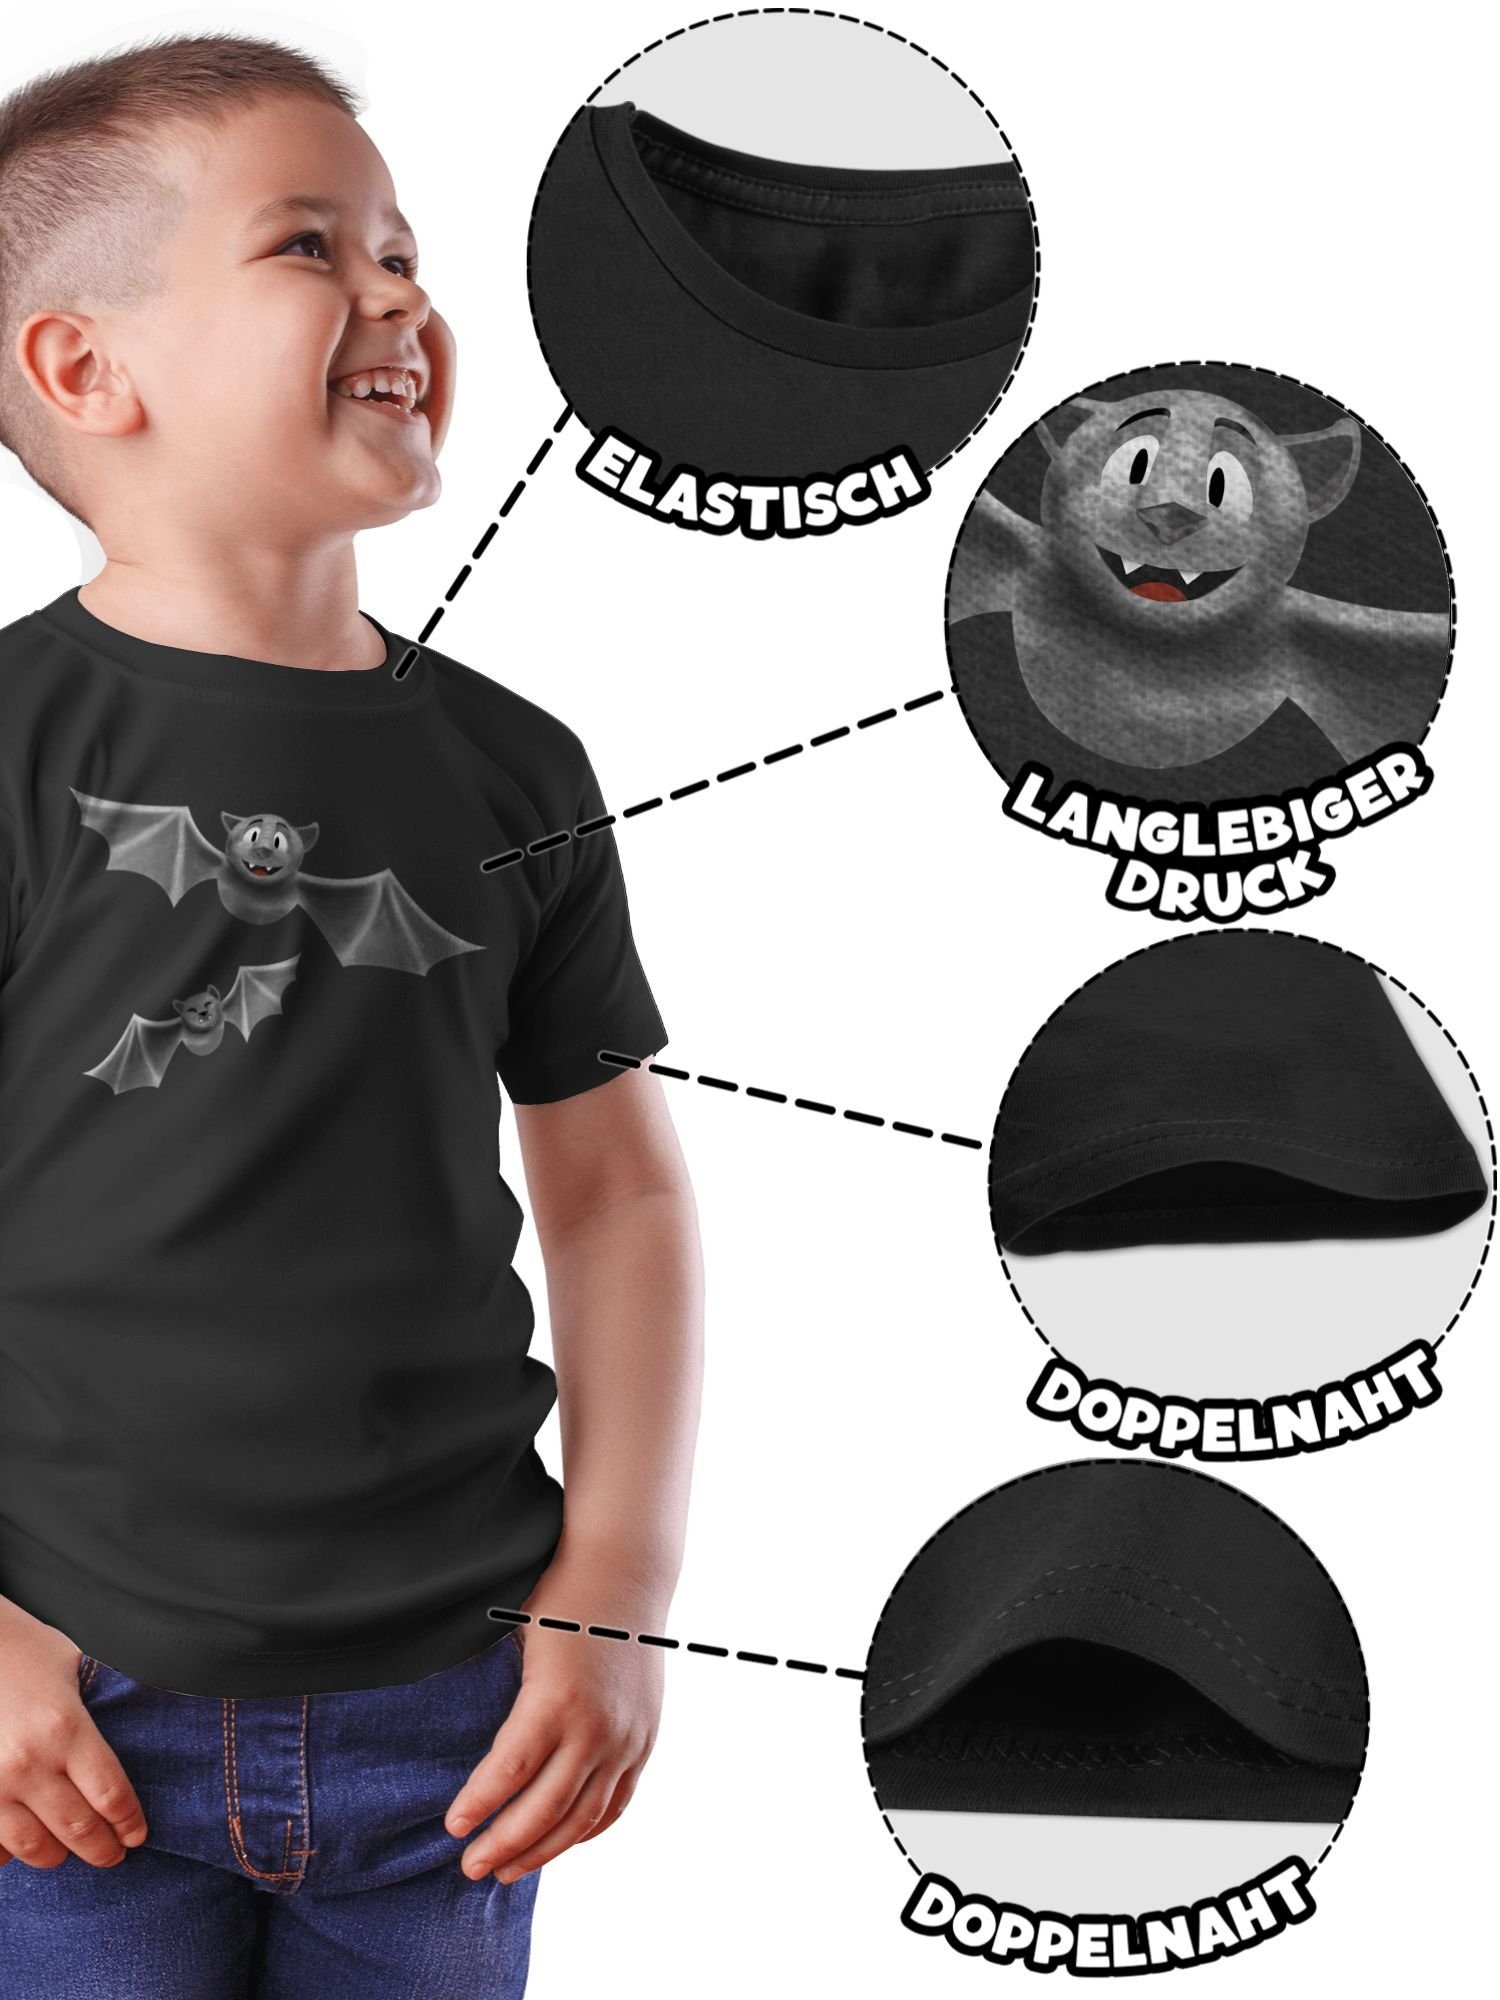 T-Shirt Kostüme Flattermaus 1 Halloween Jungs Shirtracer Feldermaus für Schwarz Kinder Fledermäuse